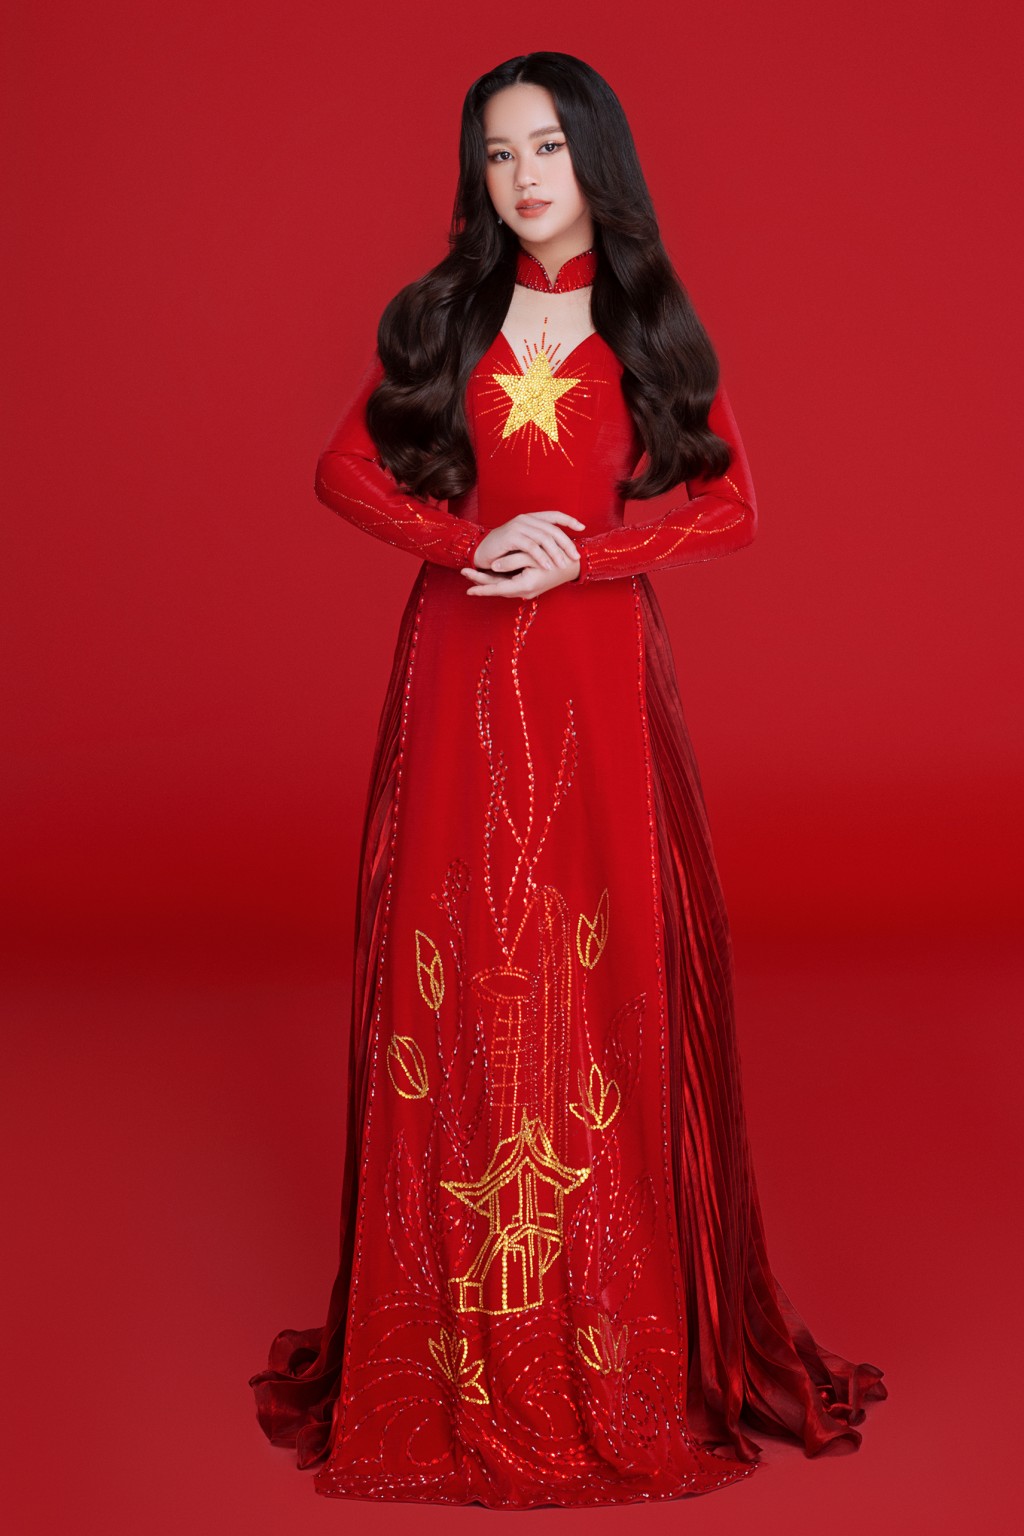 Bella Vũ hóa cô gái Thái Lan trong trang phục của NTK Nguyễn Minh Tuấn